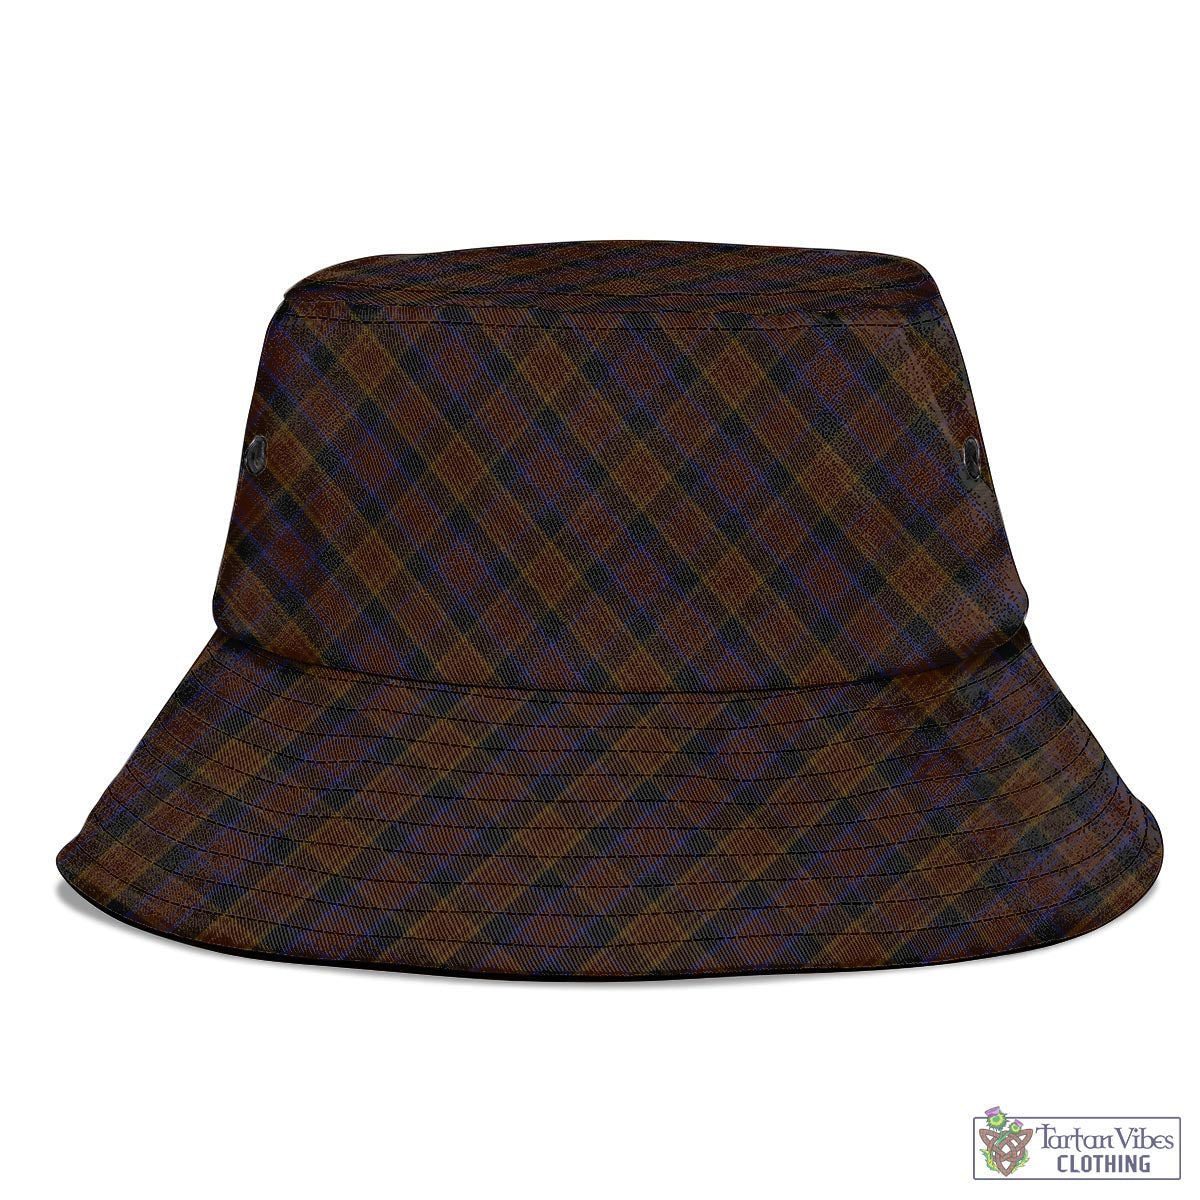 Tartan Vibes Clothing Laois County Ireland Tartan Bucket Hat